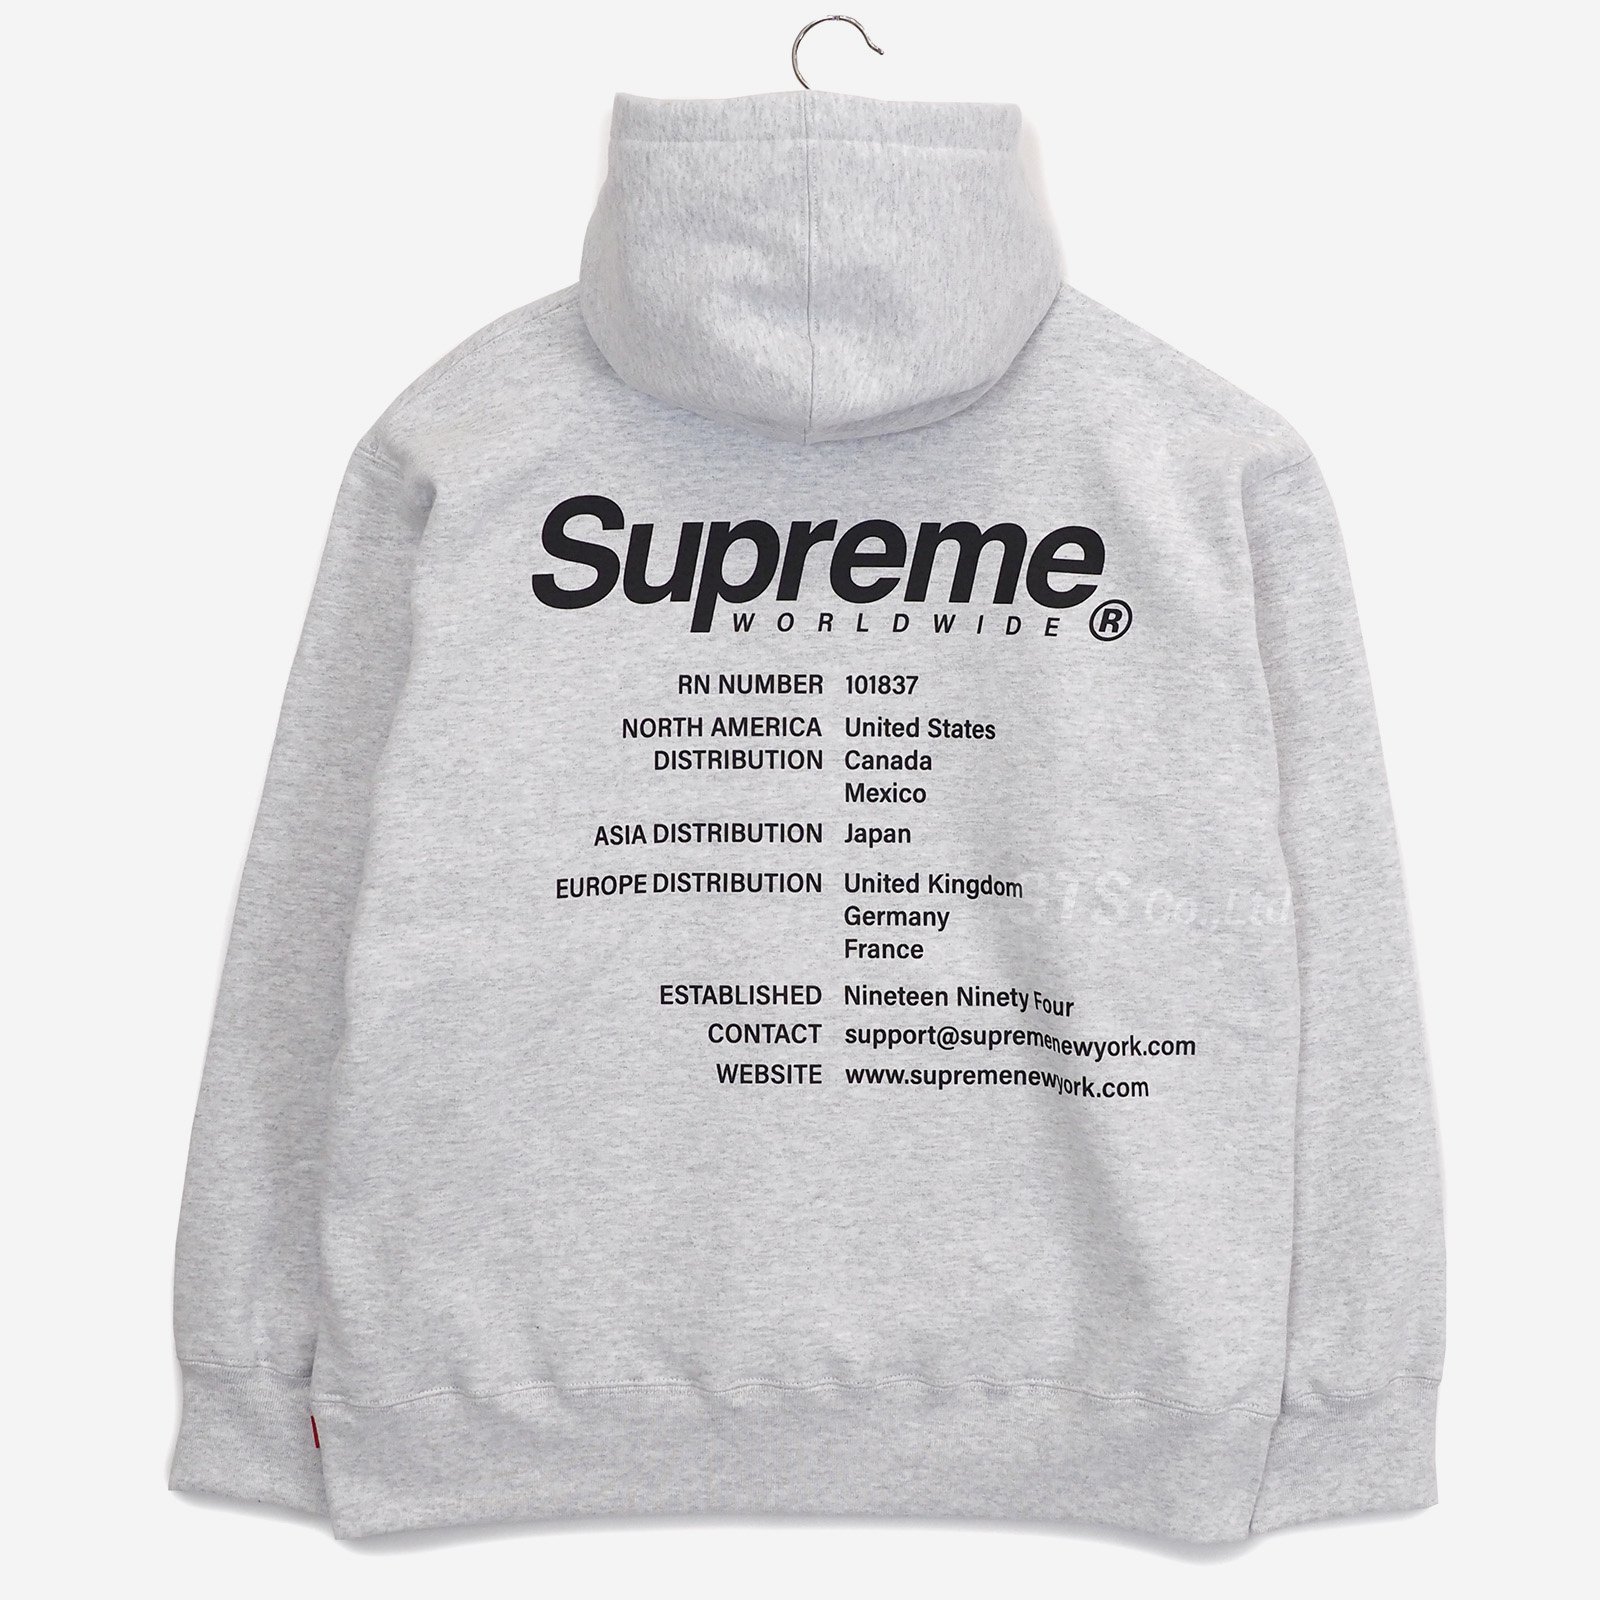 Supreme - Worldwide Hooded Sweatshirt - UG.SHAFT